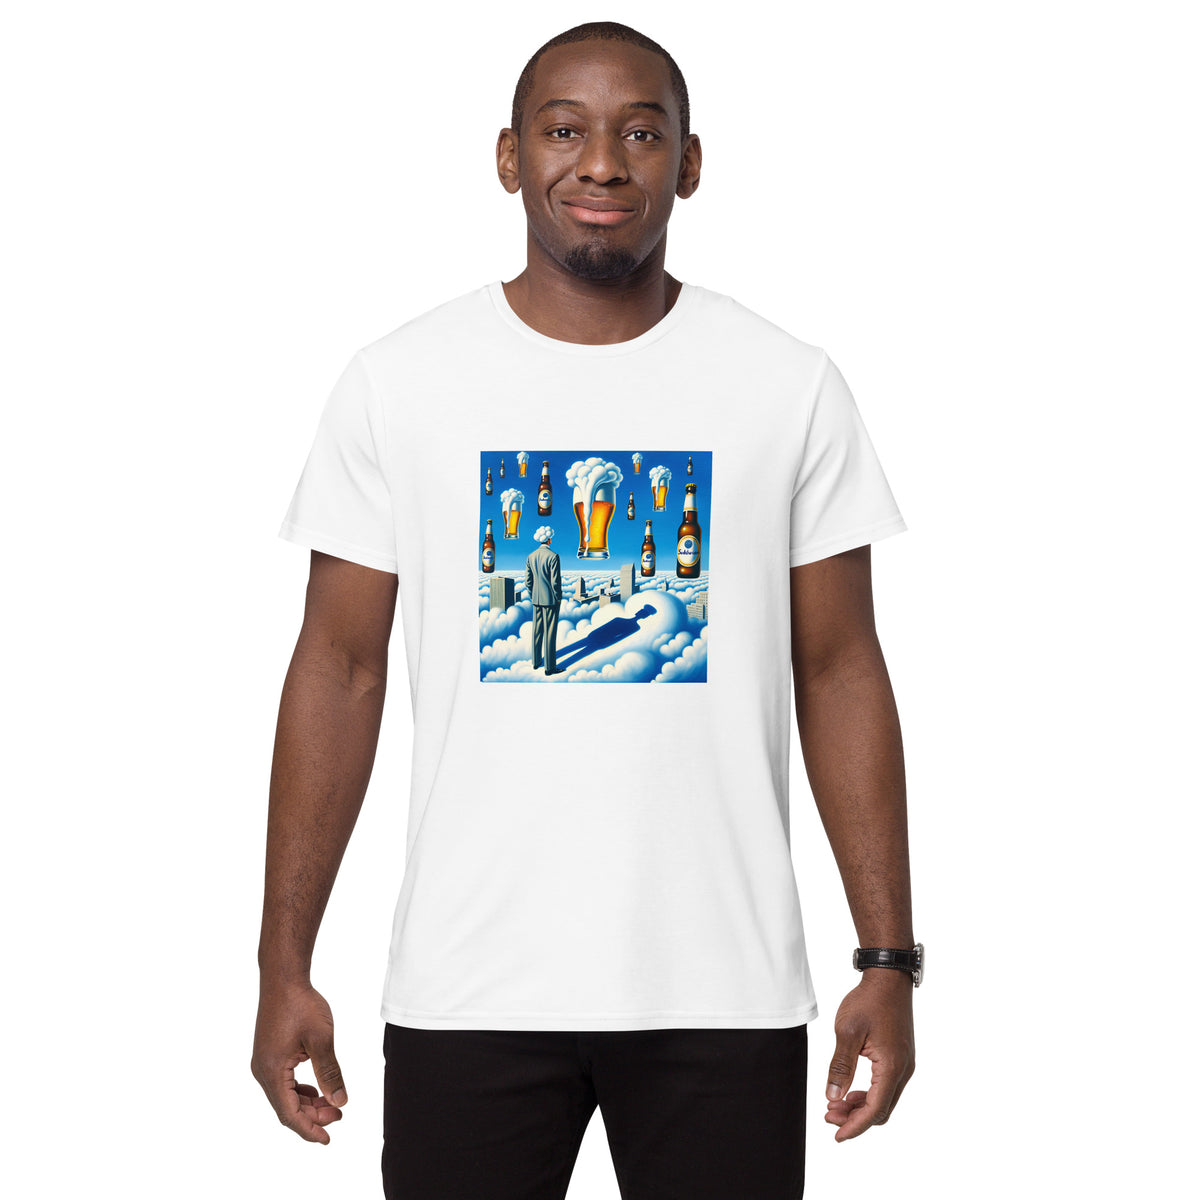 Hodlwear Surrealism | Men's Premium Cotton T-shirt